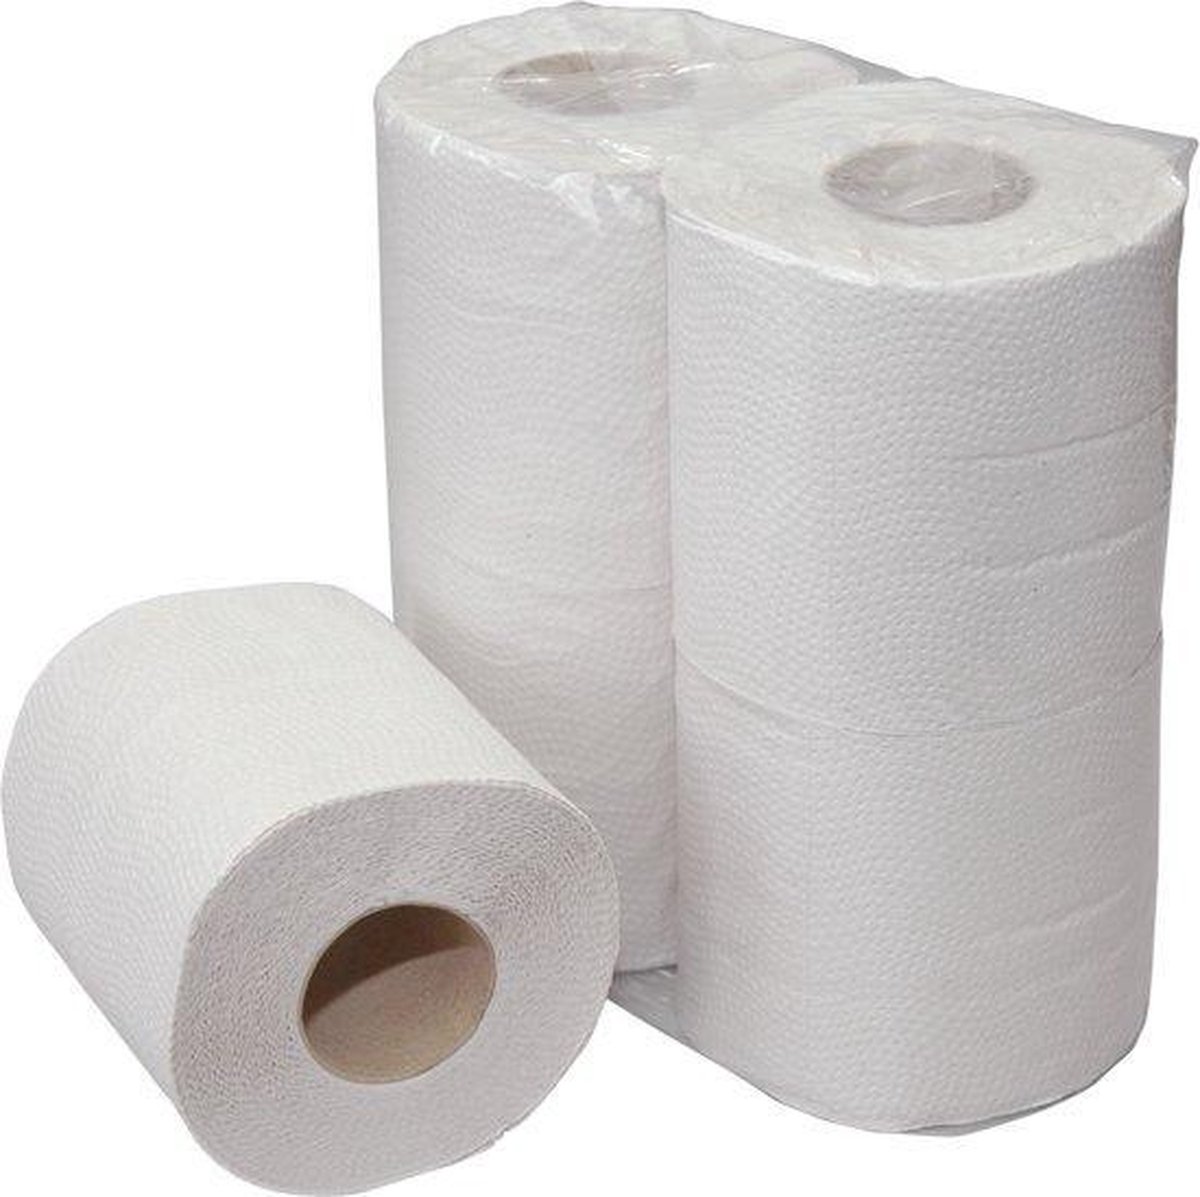 Papier toilette 2 plis, 200 feuilles, 48 rouleaux | bol.com